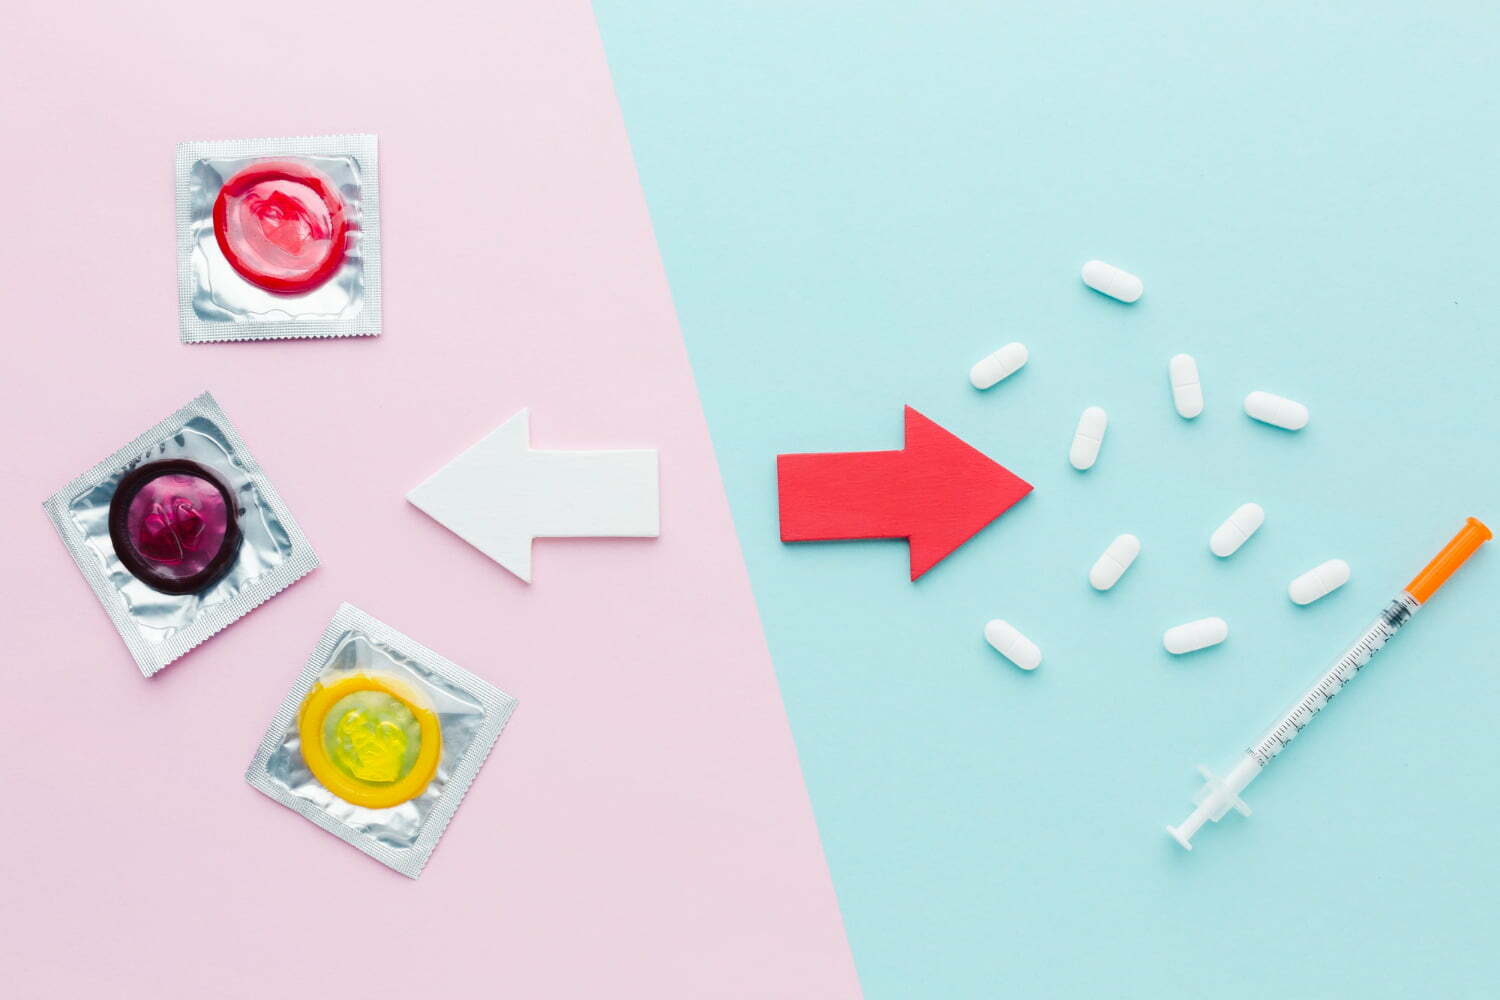 foto de métodos anticonceptivos sobre fondo azul y rosado - metodo anticonceptivo